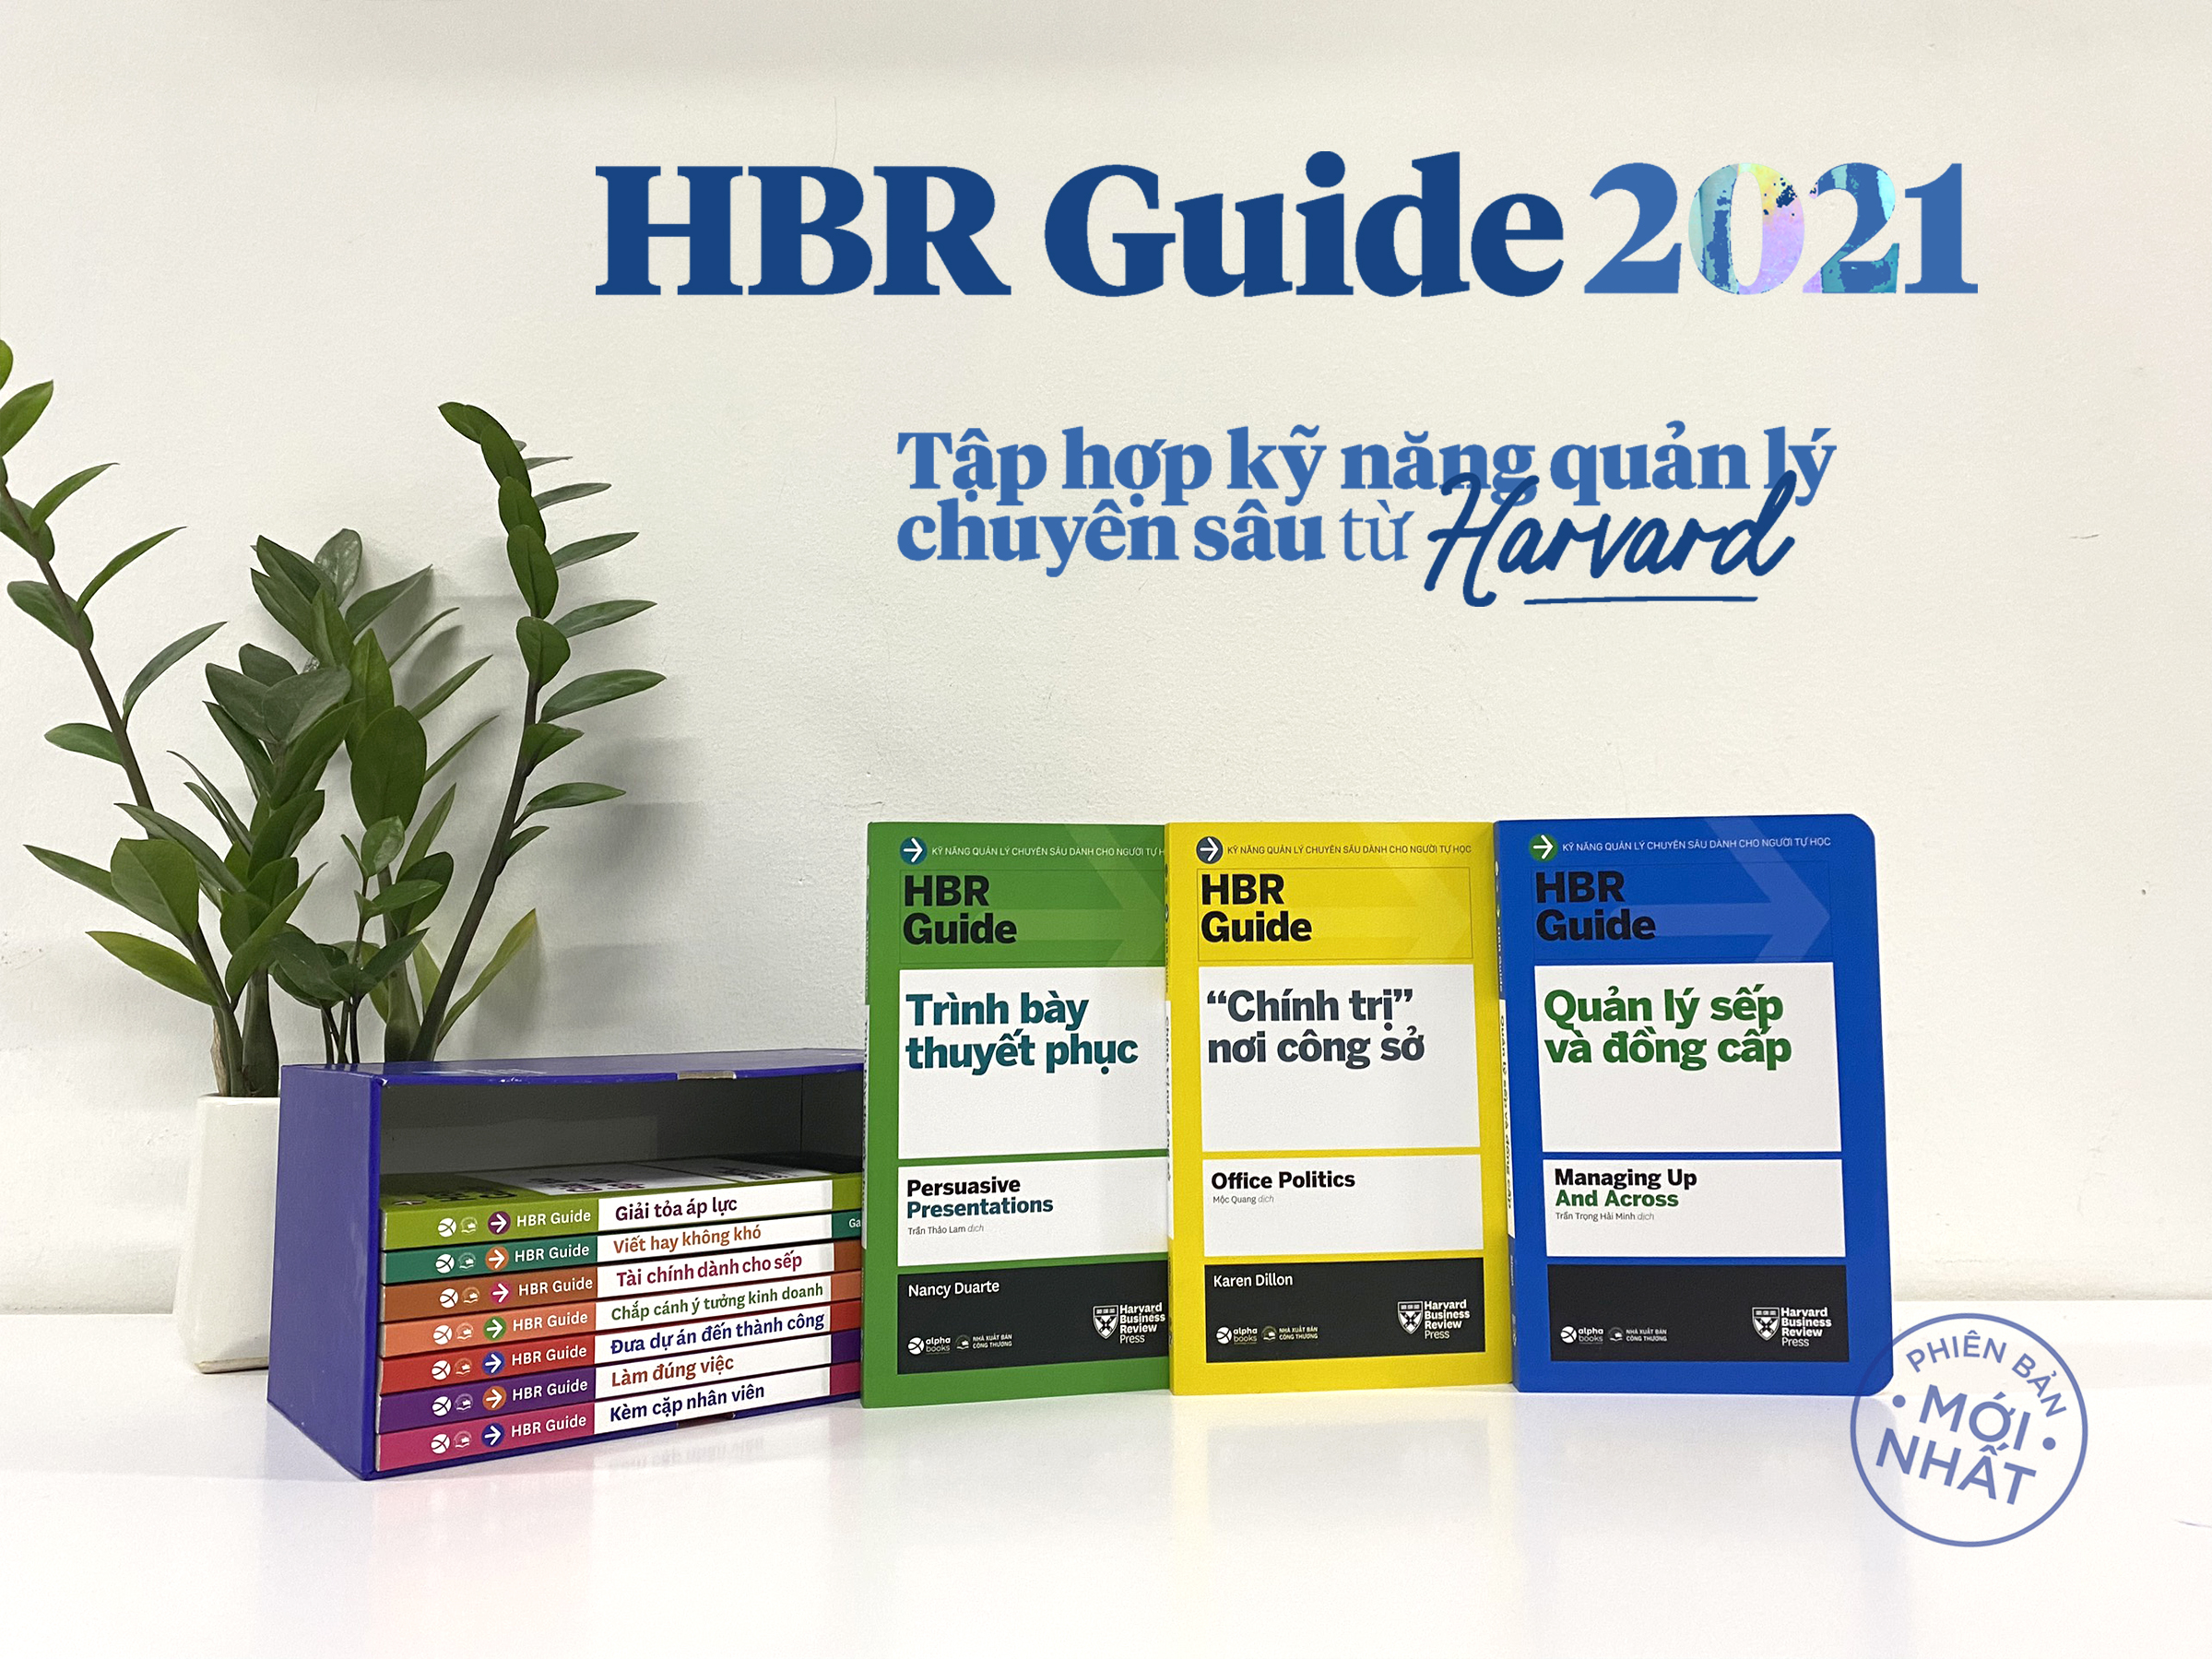 HBR Guide: Kỹ Năng Quản Lý Chuyên Sâu Từ Harvard Business Review ( Bộ 10 cuốn + tặng kèm boxset)